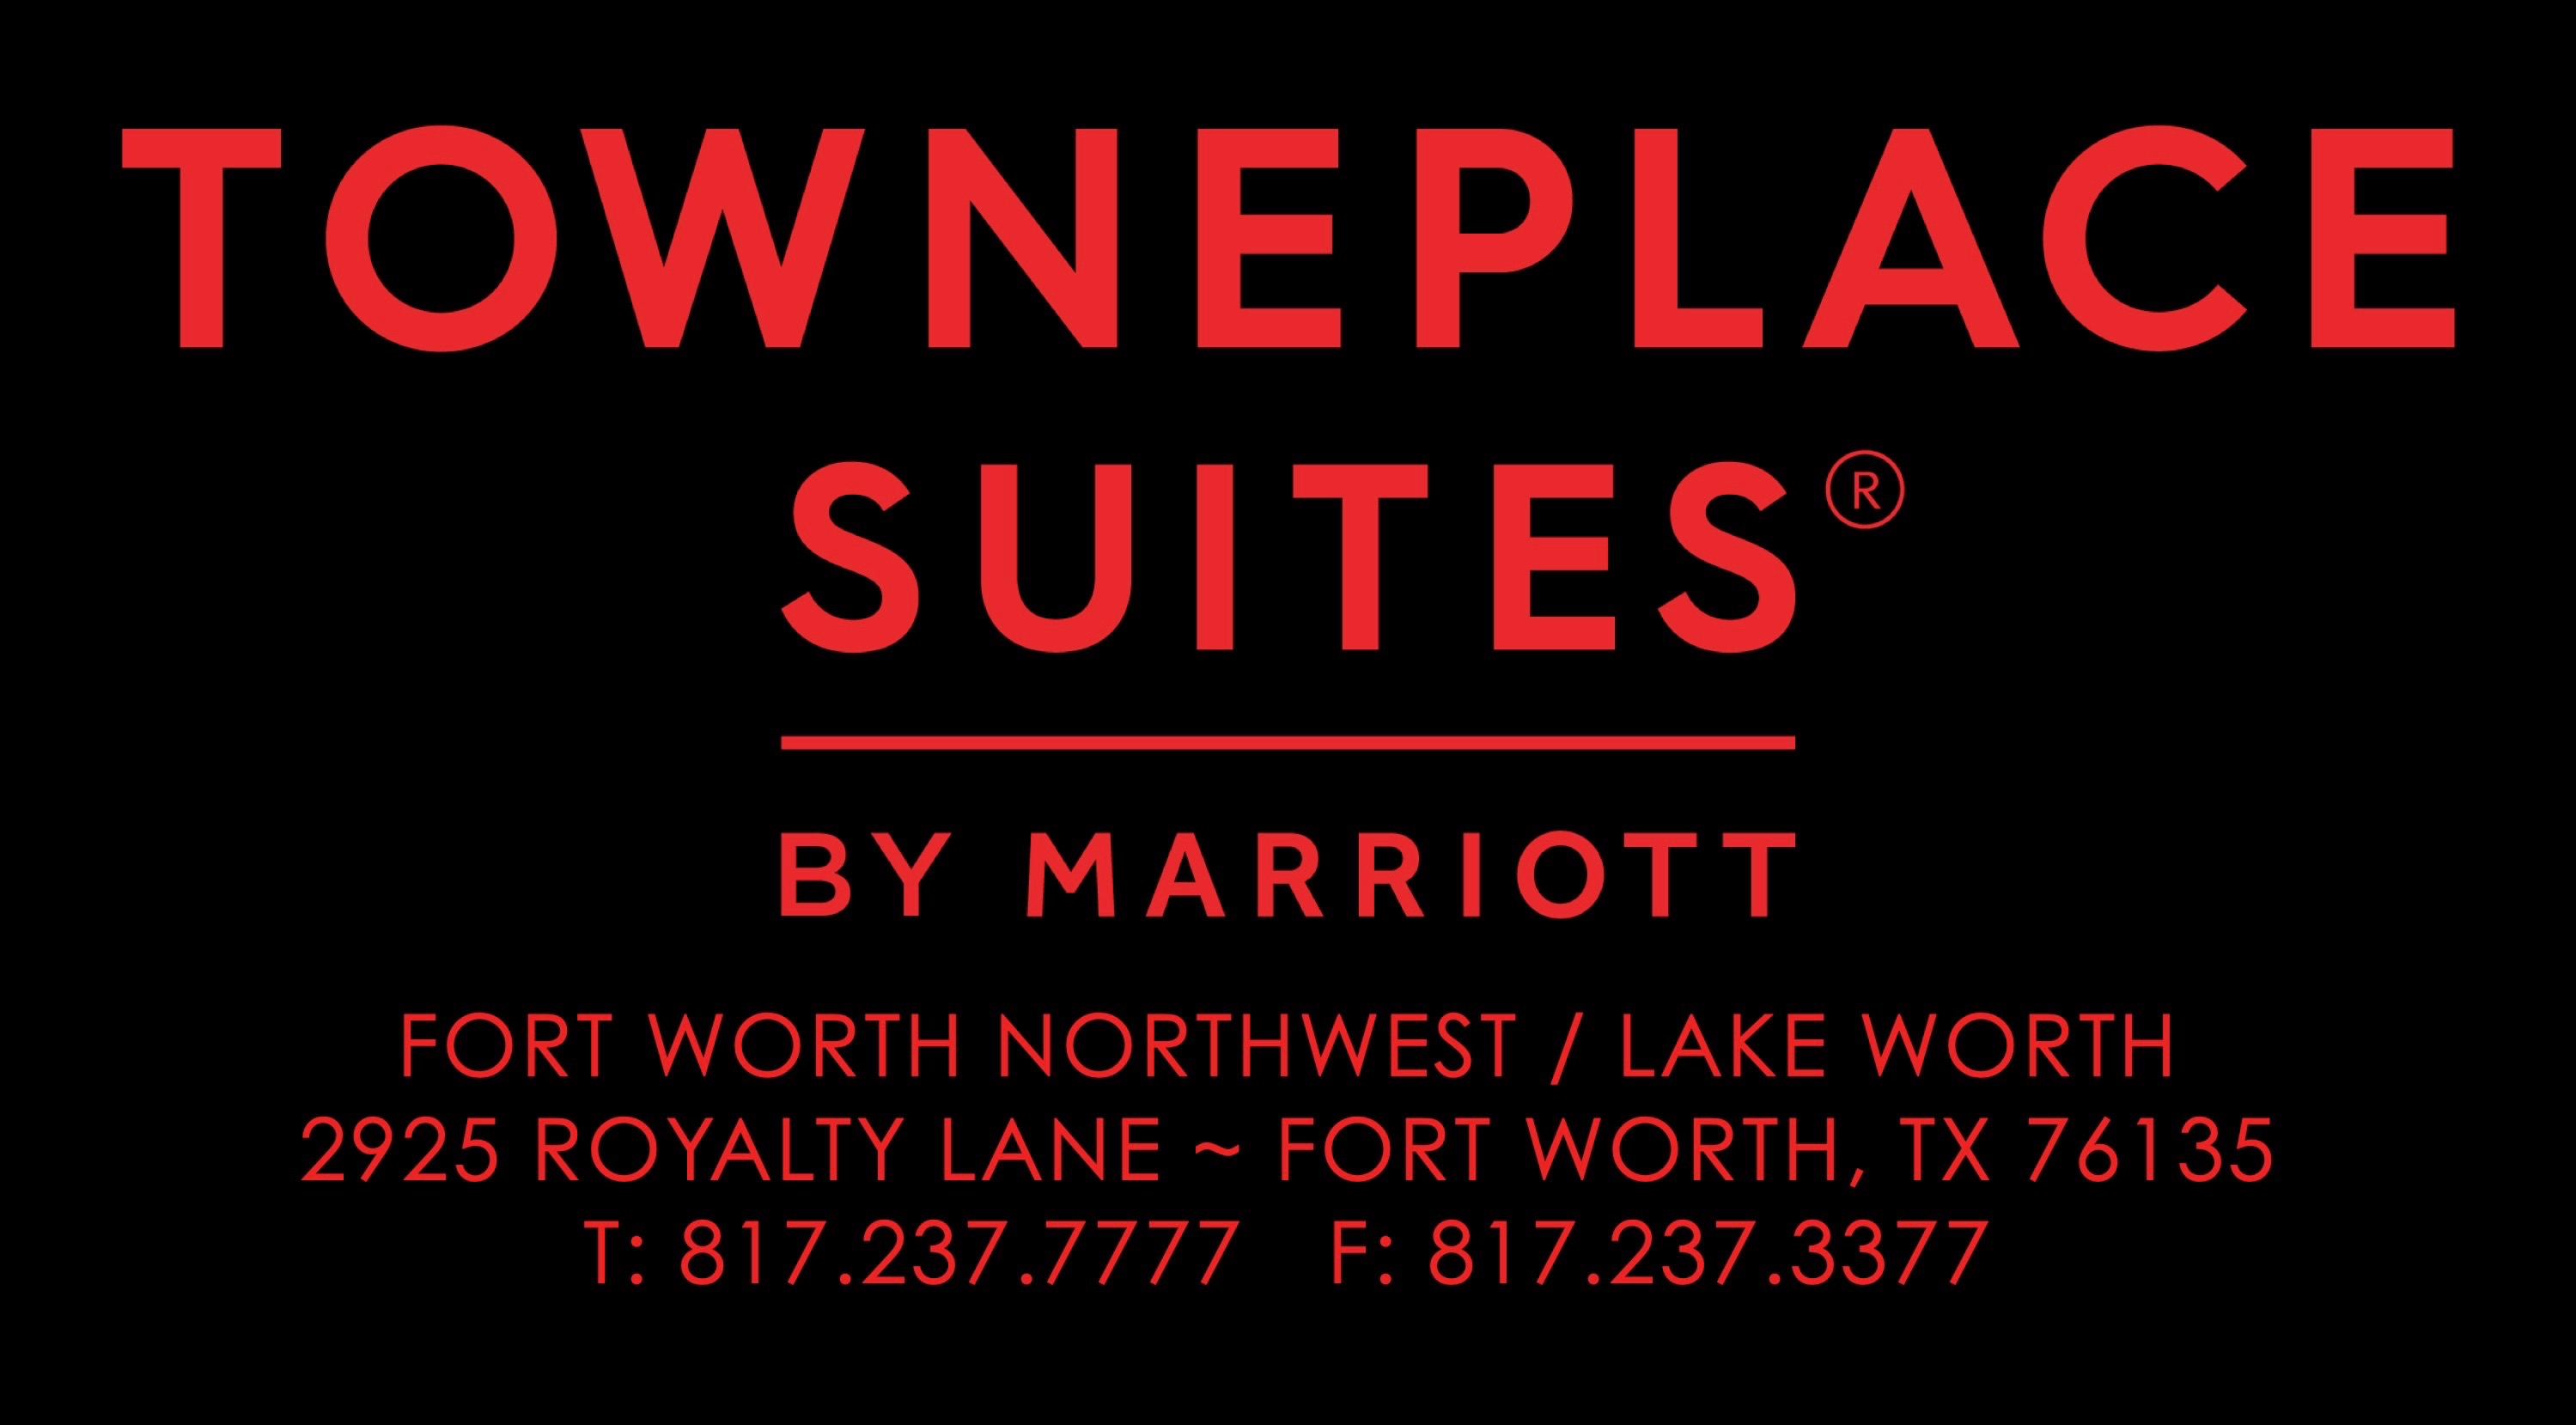 Marriott Towne Place Suites